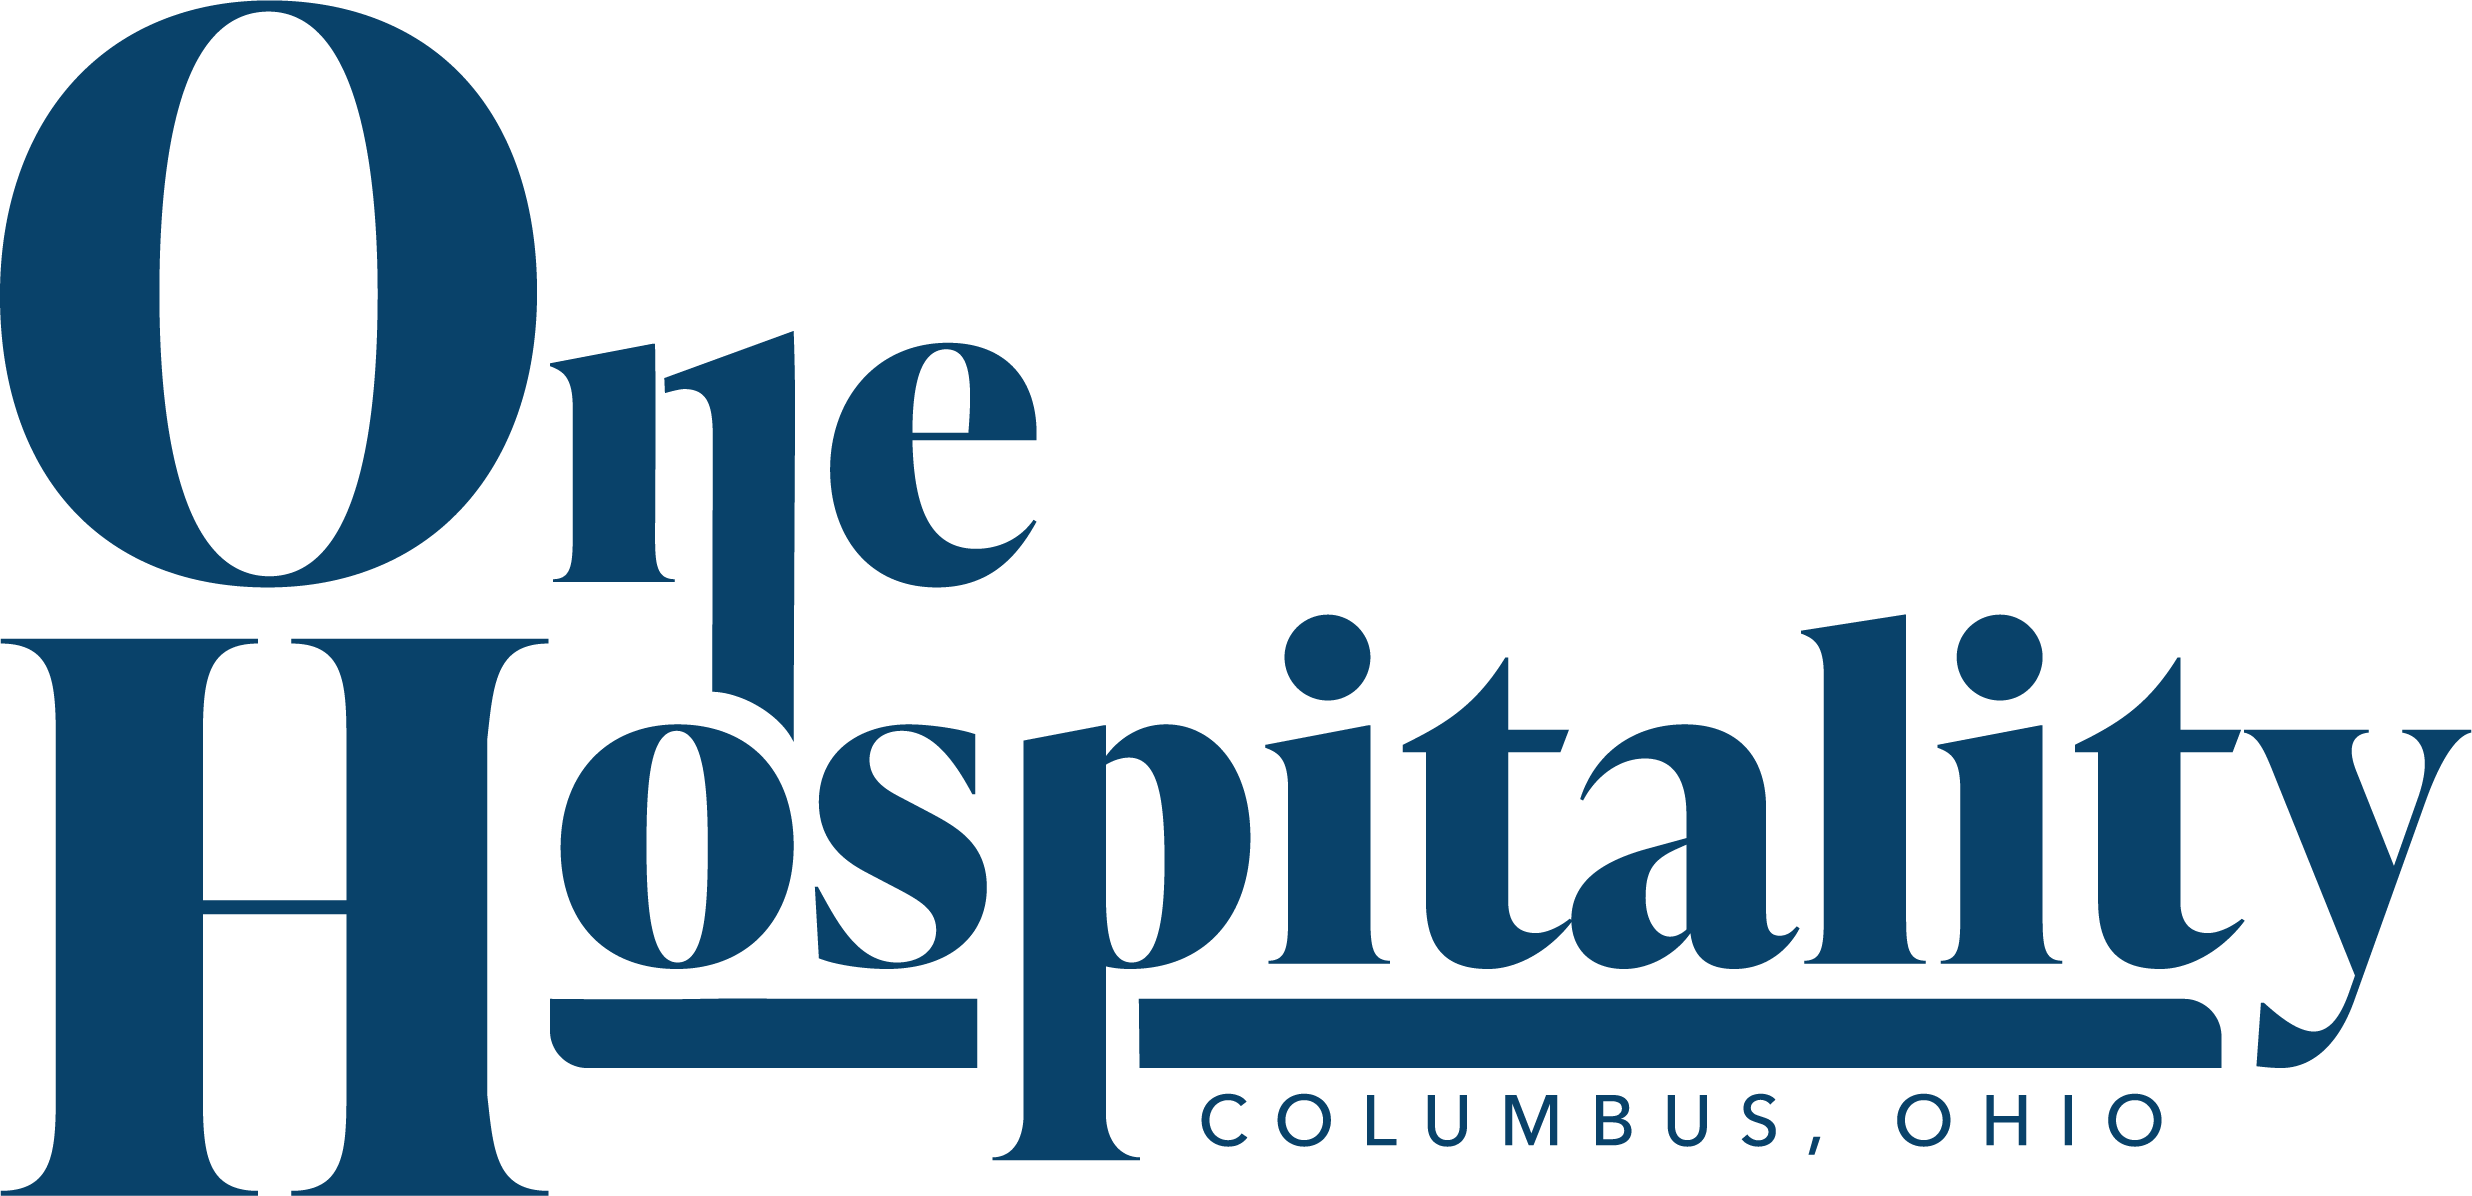 One Hospitality Group - Columbus Ohio